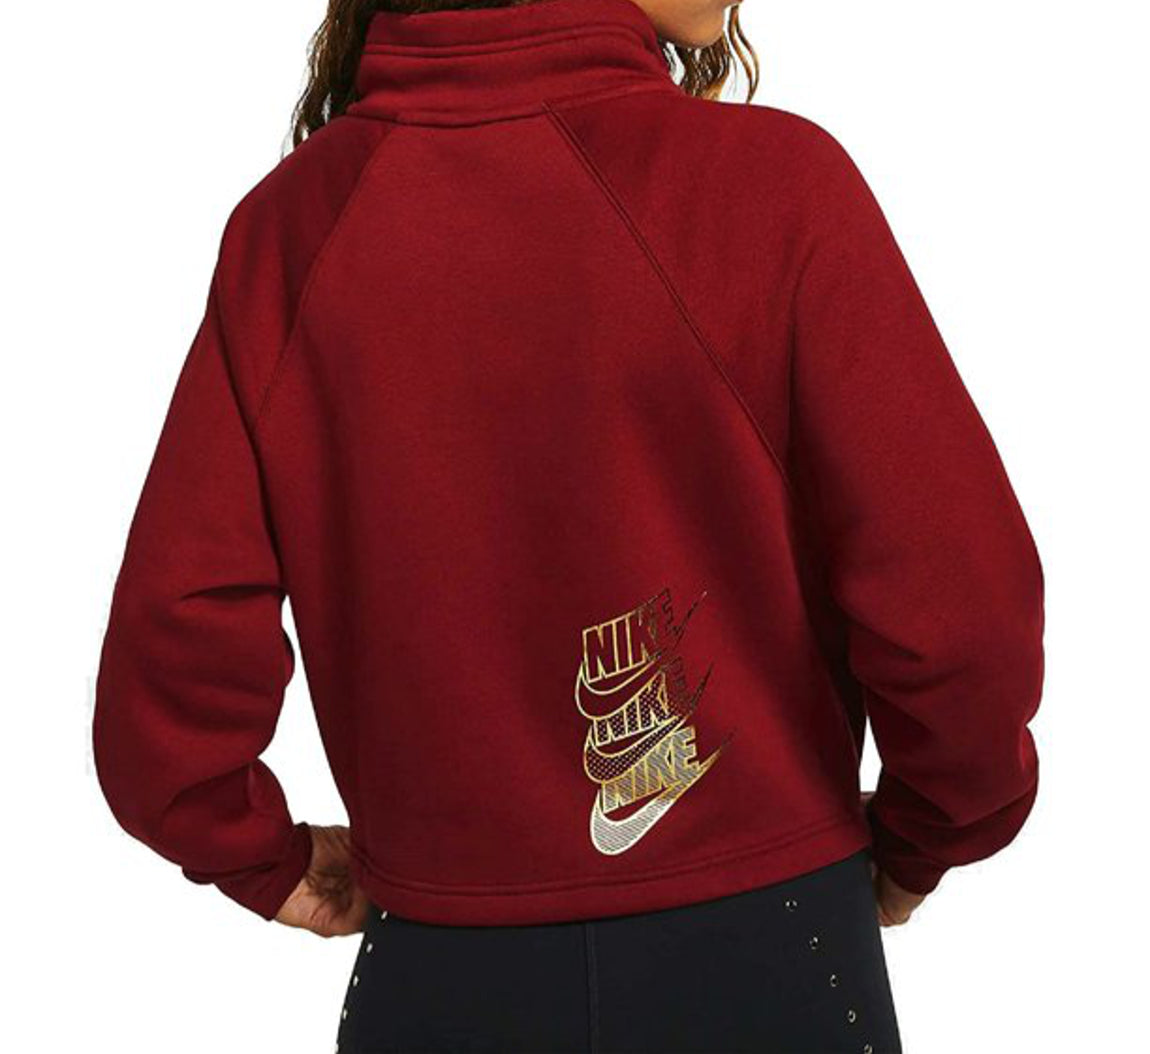 Nike Womens Shine Metallic Graphic Half Zip Sweatshirt